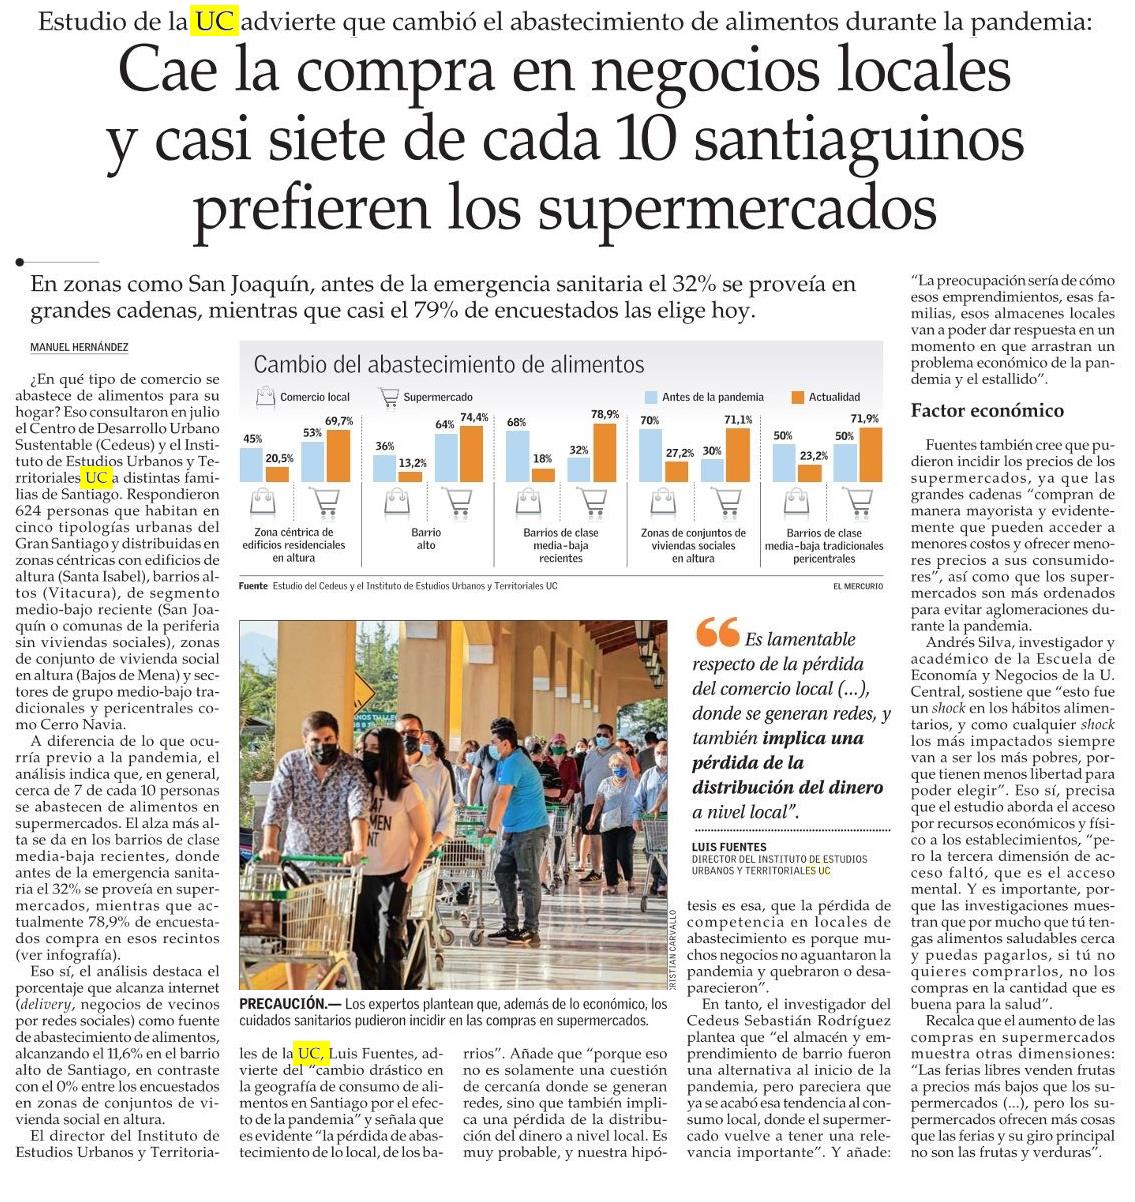 El Mercurio: Cae la compra en negocios locales y casi siete de cada 10 santiaguinos prefieren los supermercados